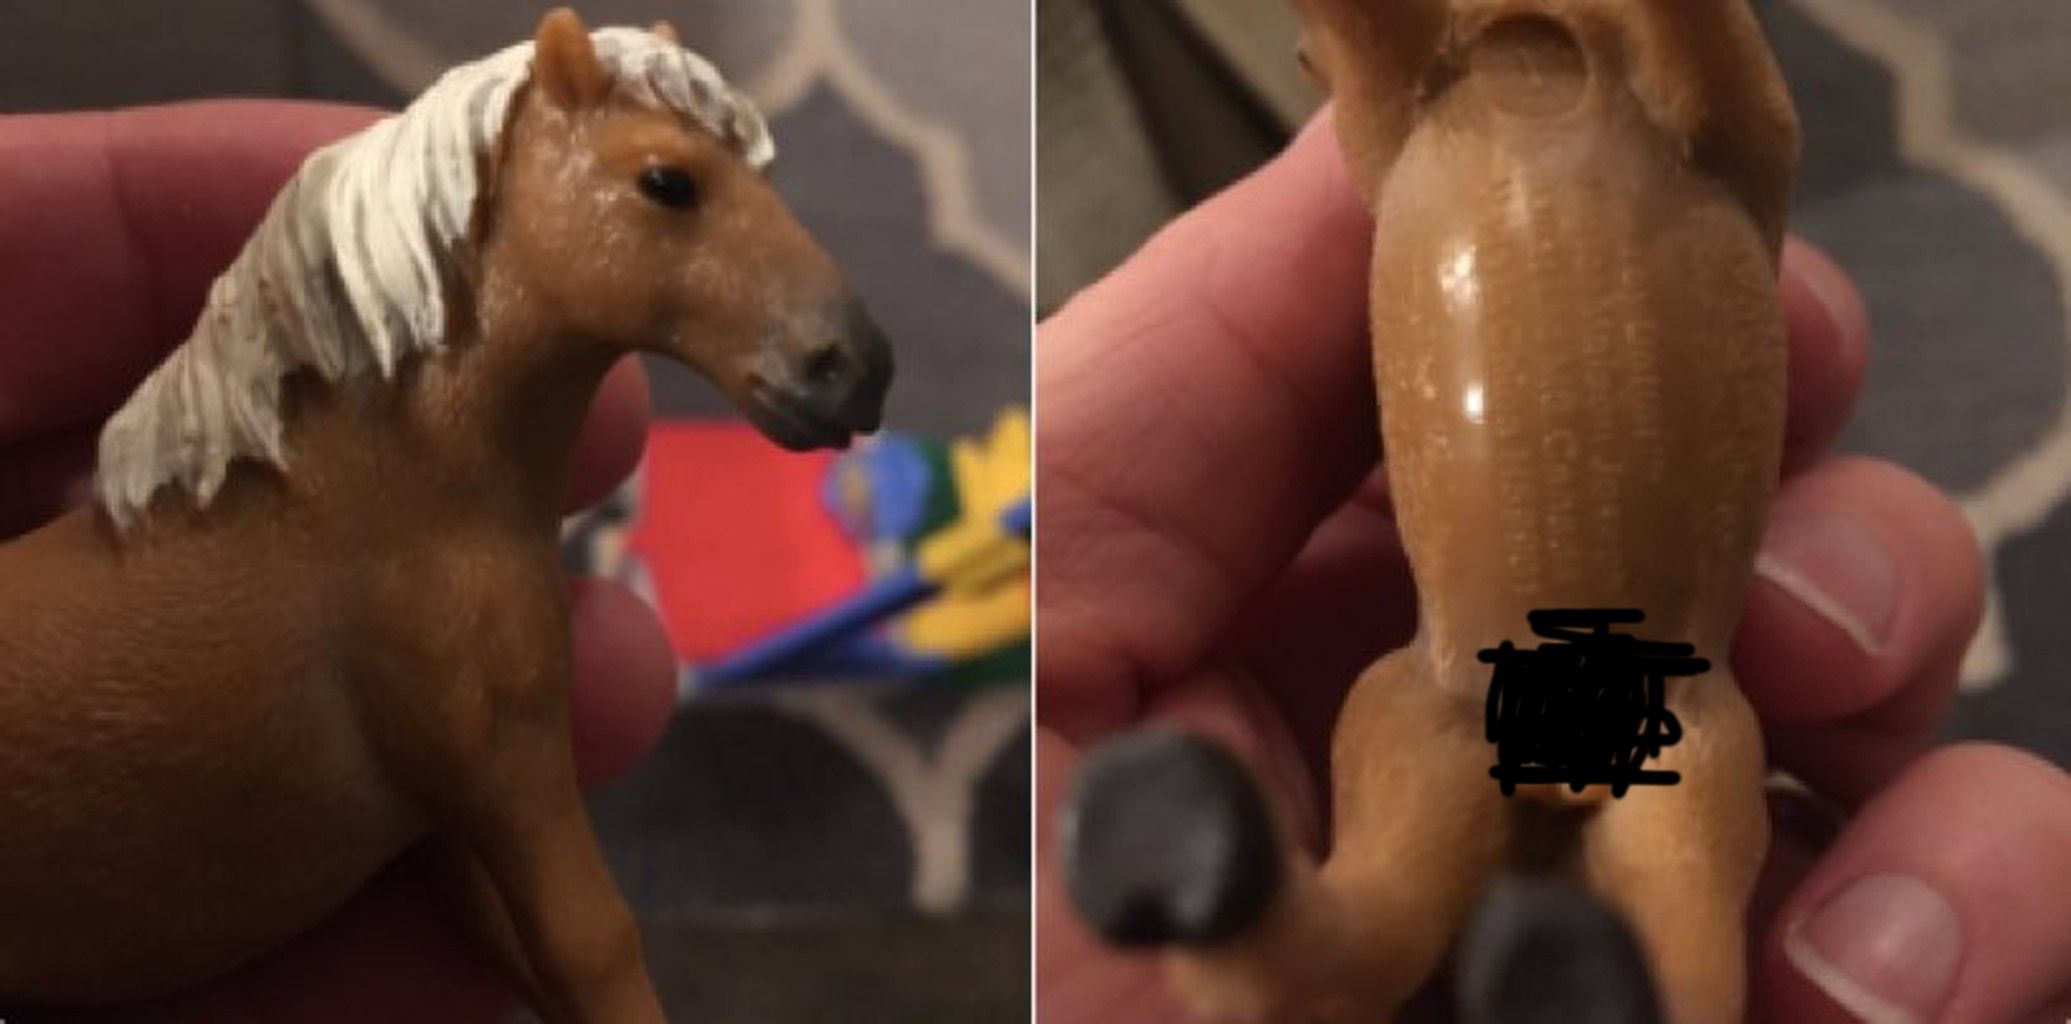 Horse Penis